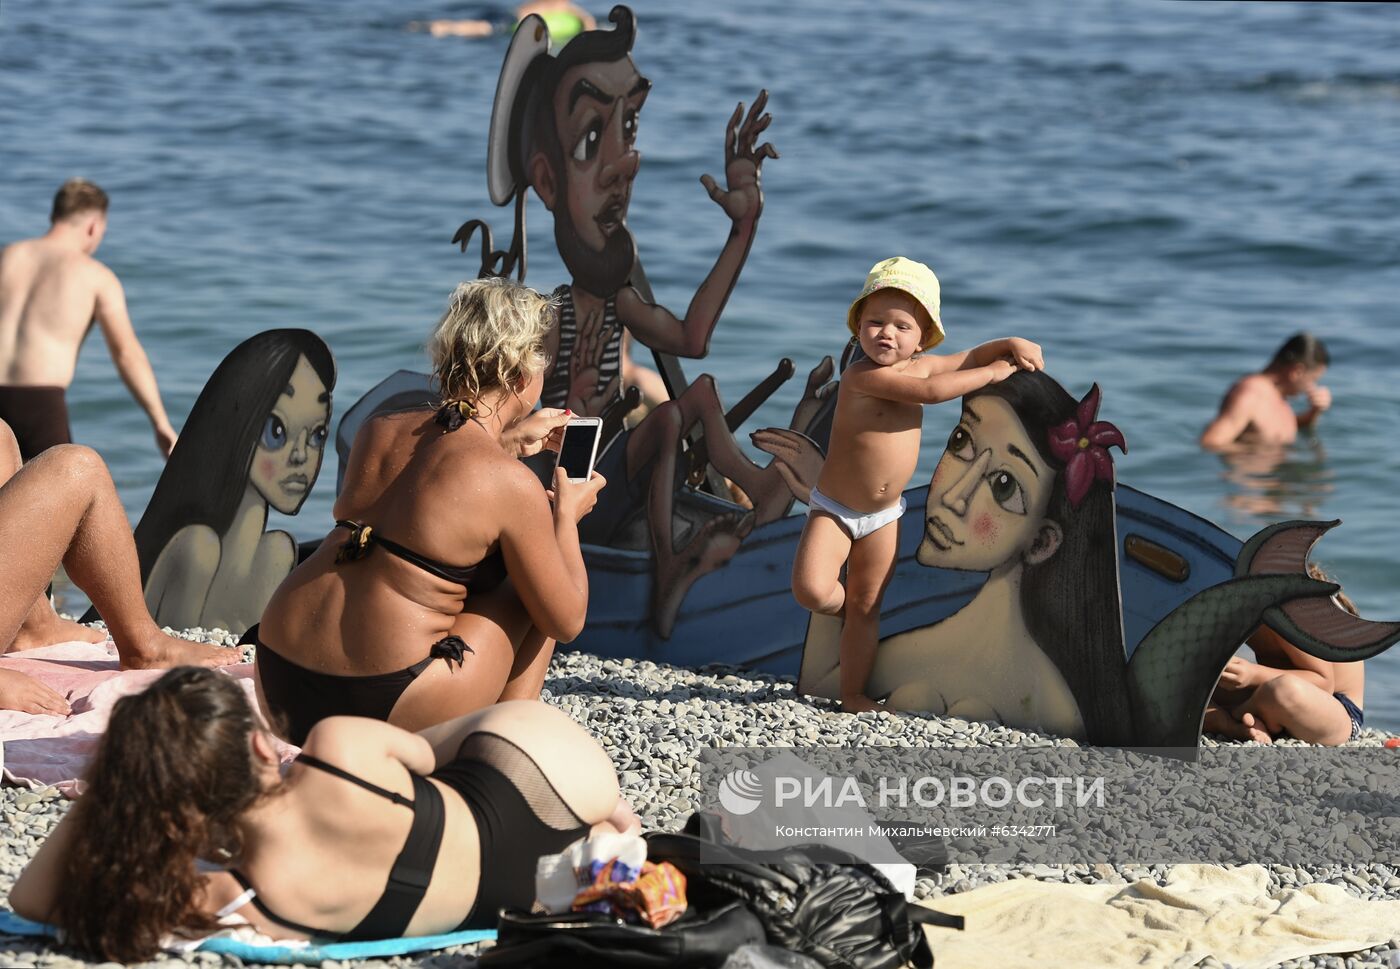 Арт-пикник "Люди моря" в Ялте